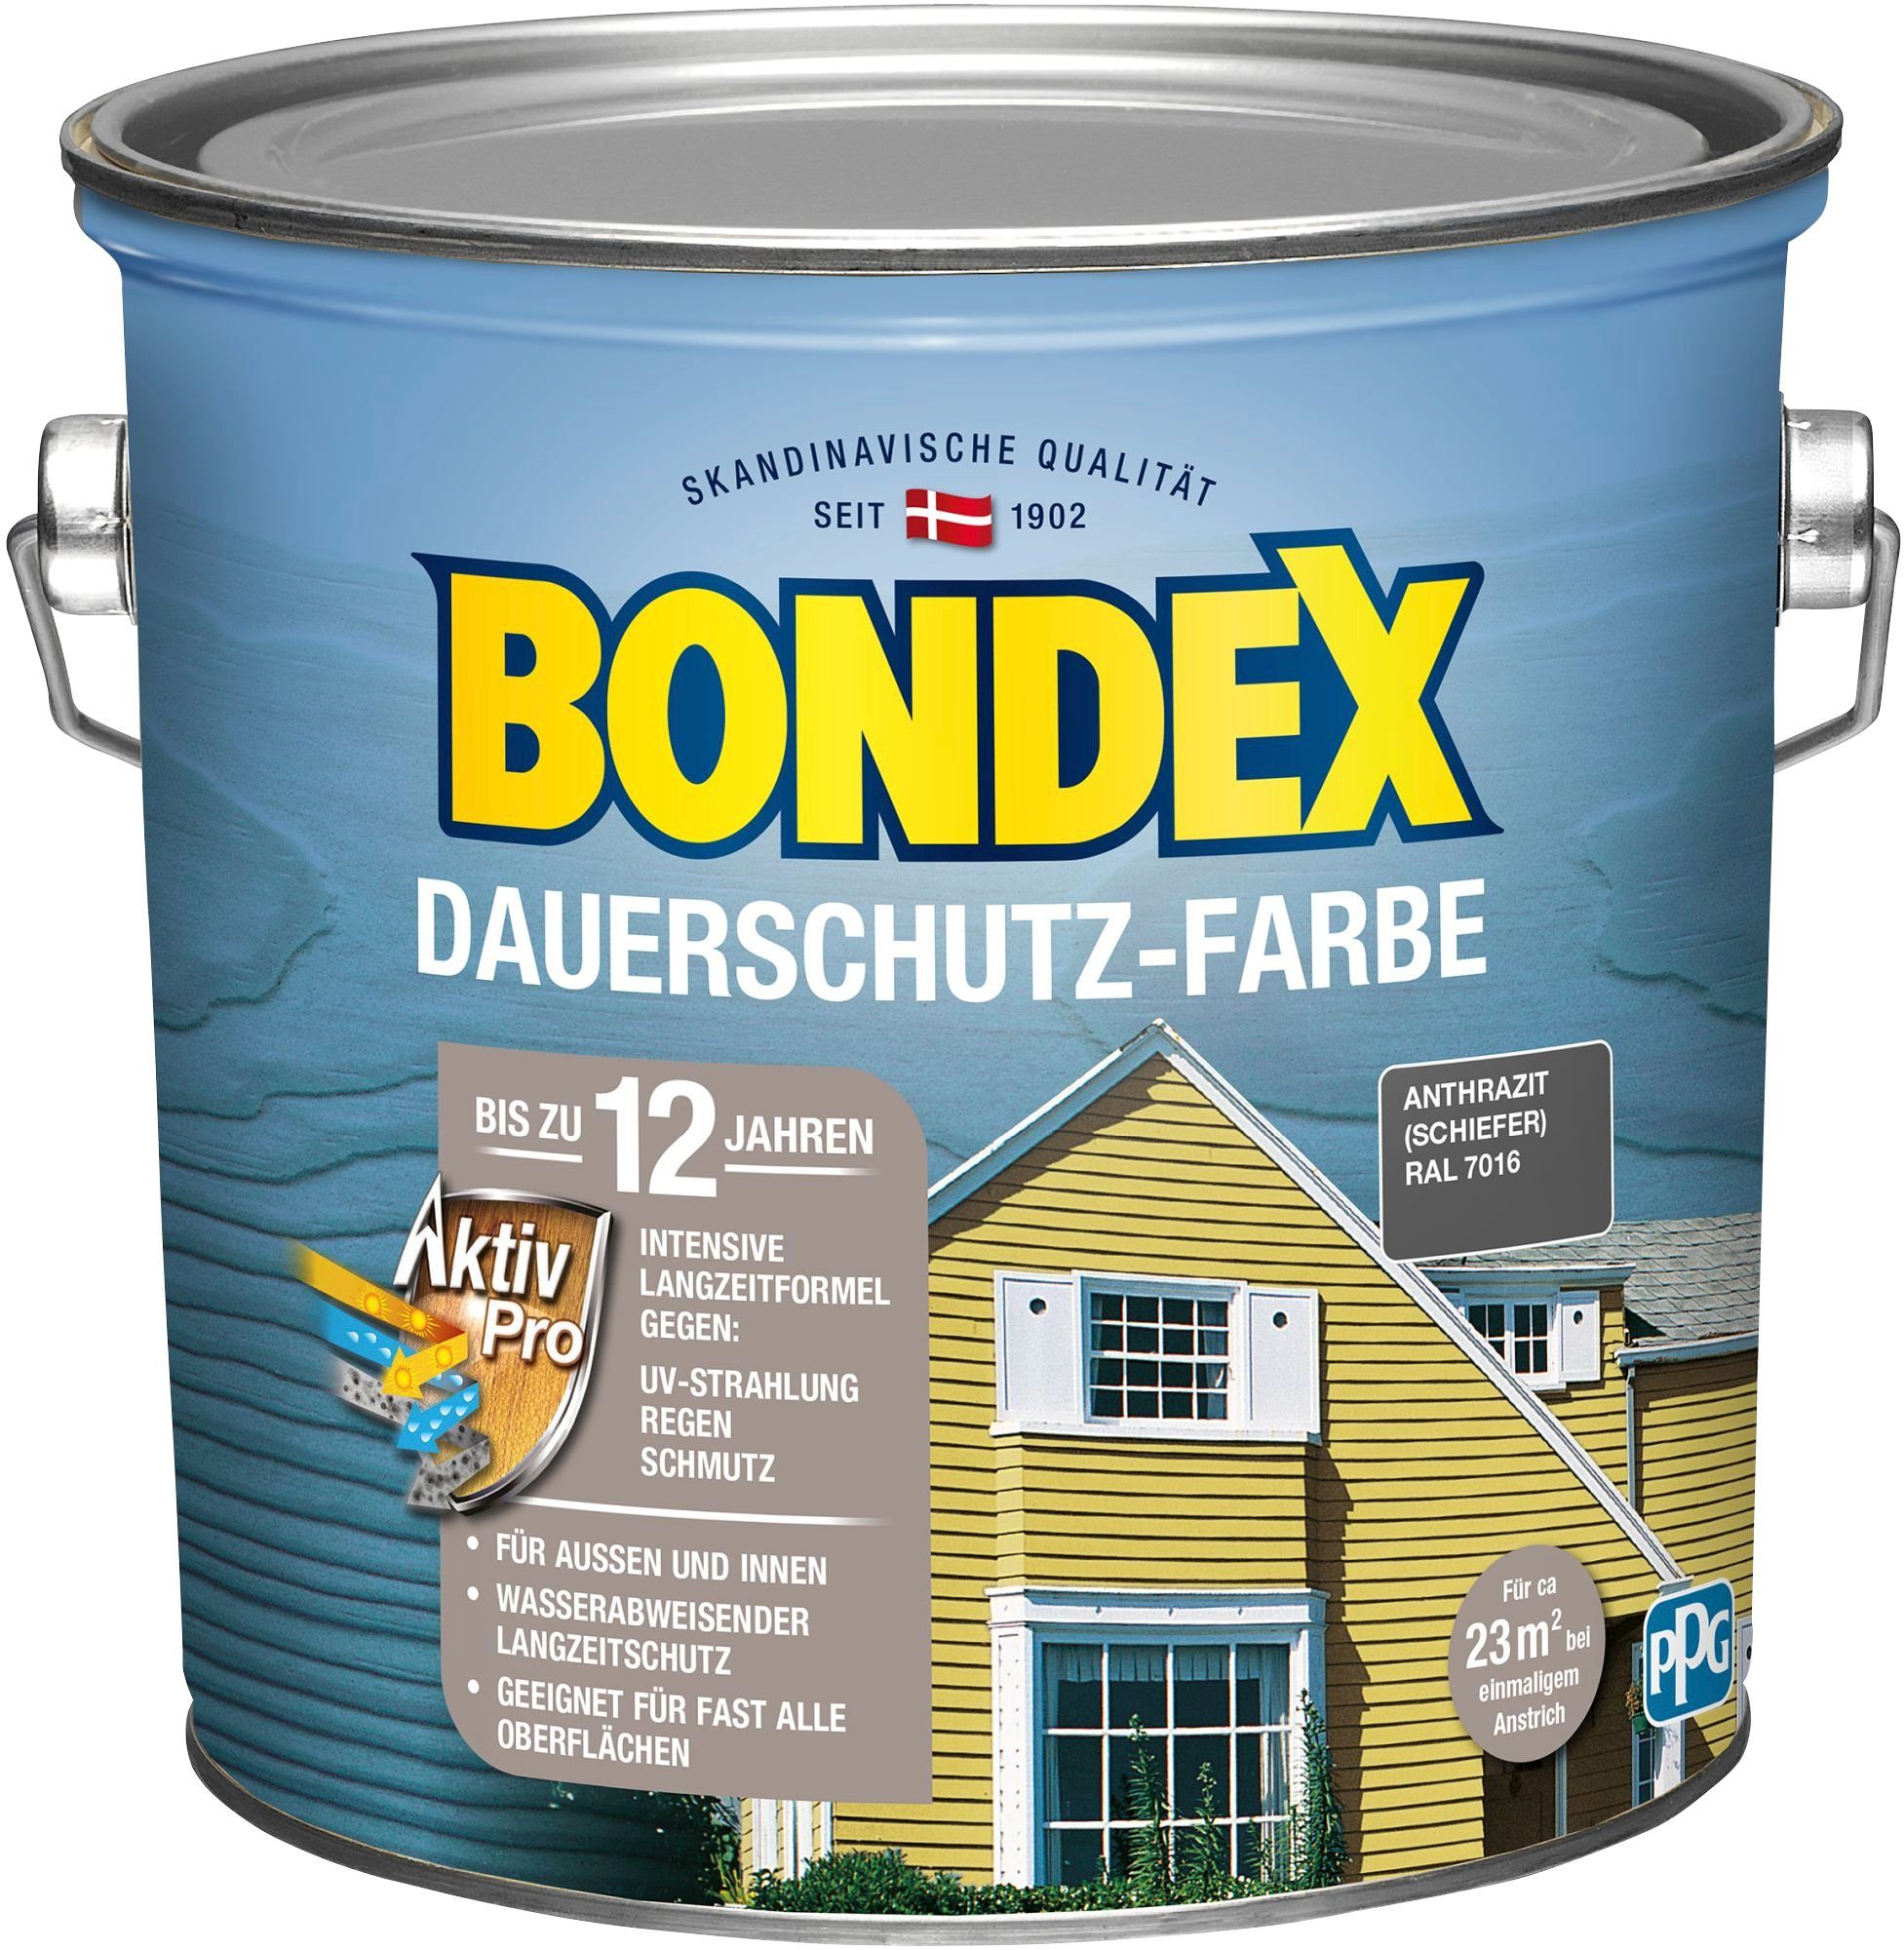 Bondex Wetterschutzfarbe DAUERSCHUTZ-FARBE, für Außen und Innen, Wetterschutz mit Aktiv Pro Langzeitformel Schiefer